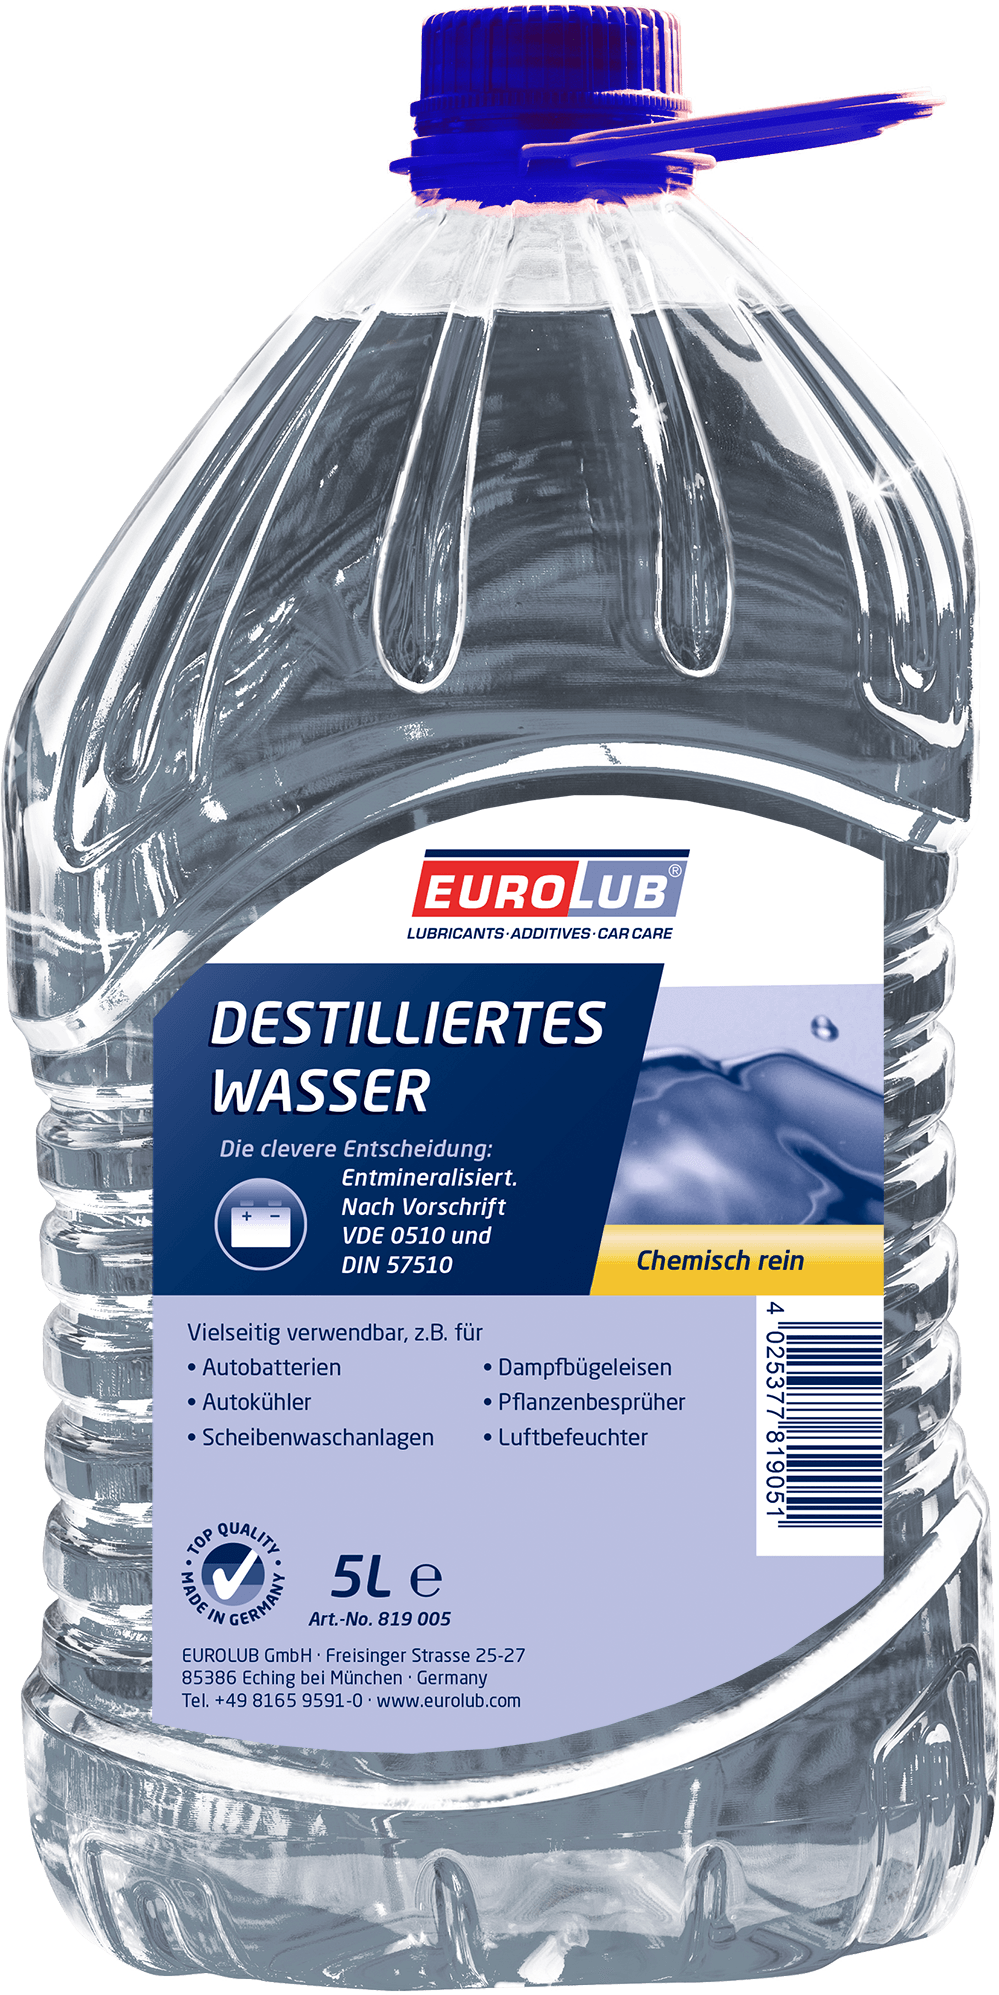 EUROLUB Destilliertes Wasser 5l - Destilliertes Wasser